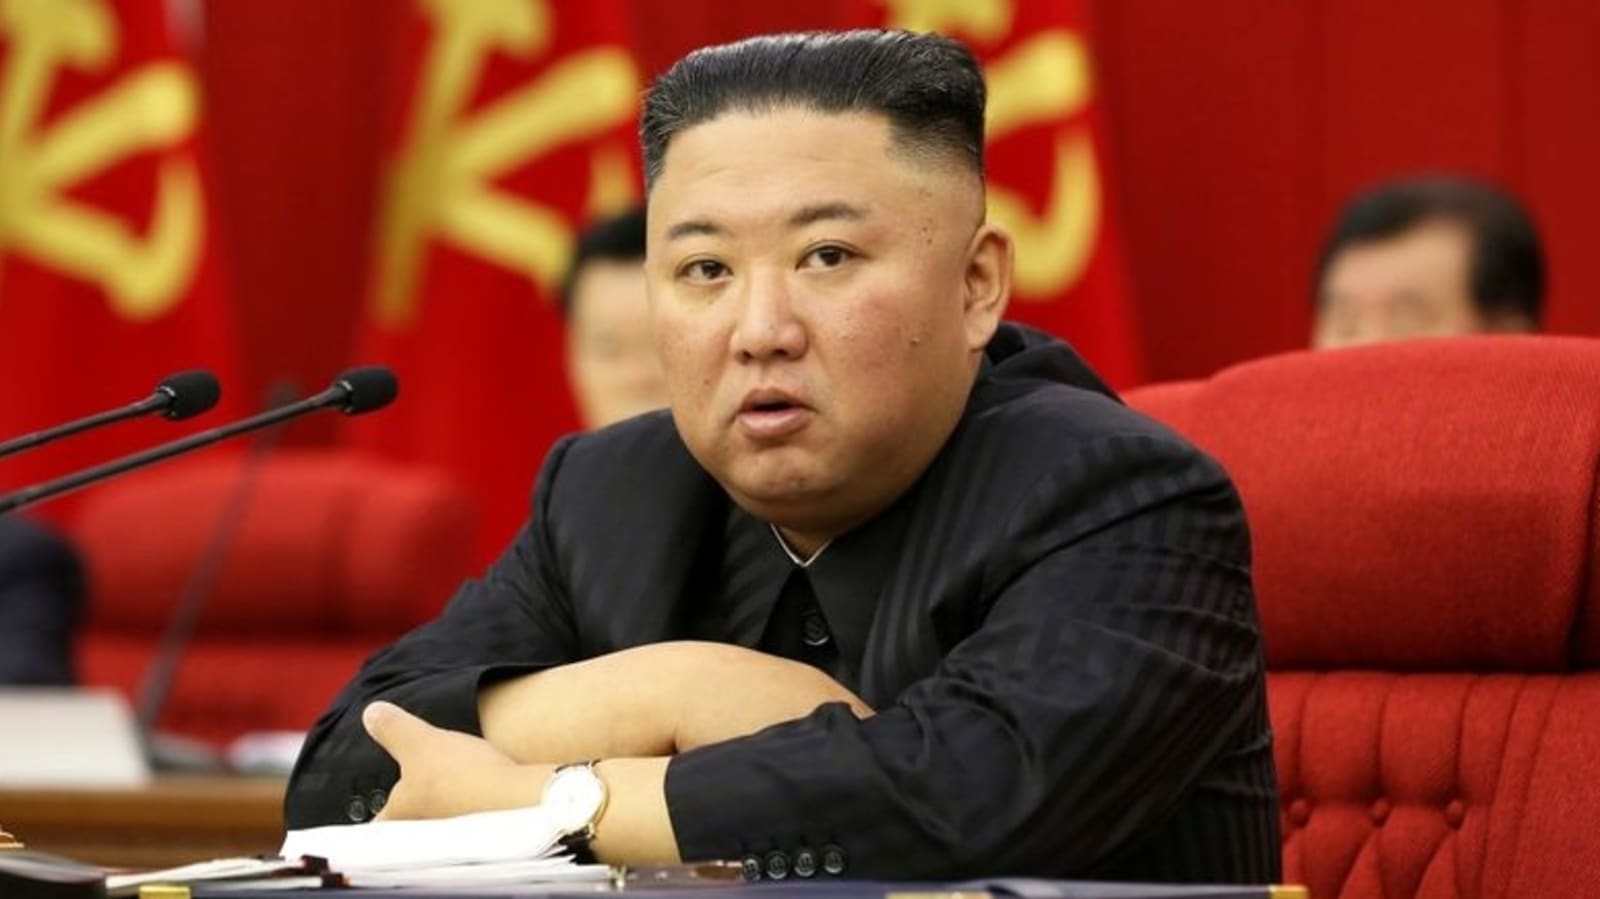 북한 사람들은 김정은의 최근 체중 감량에 “실연”하는 | 월드 뉴스